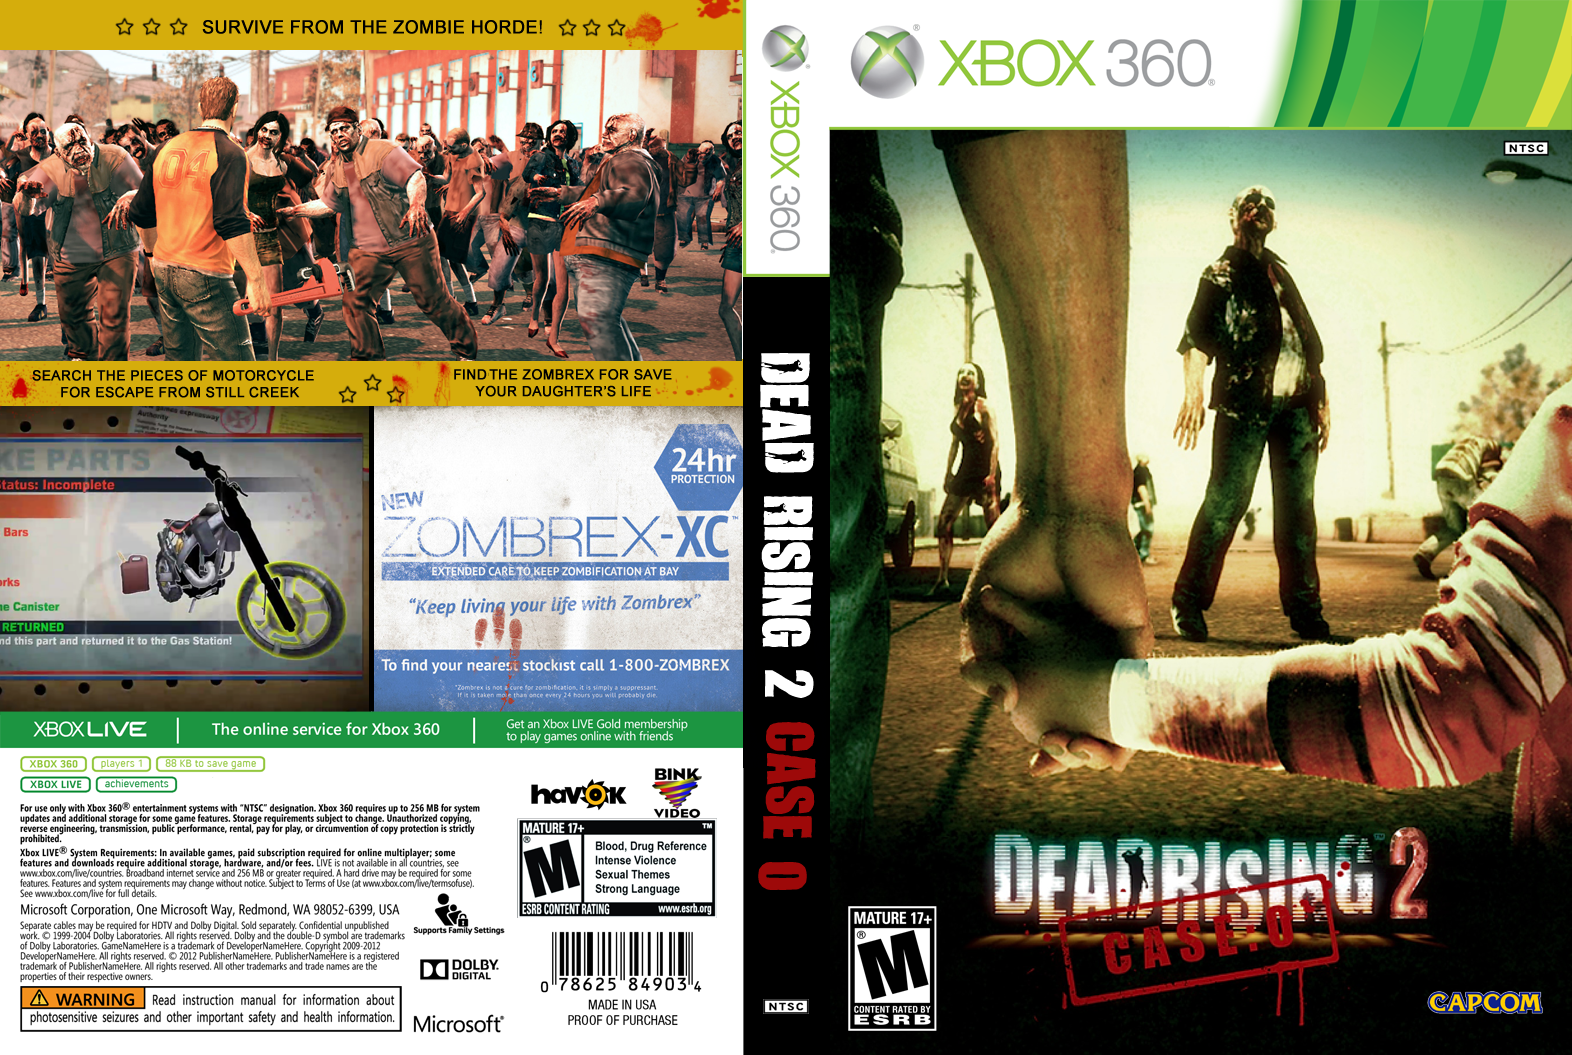 Dead Rising 2 Case Zero (Alternative) box cover